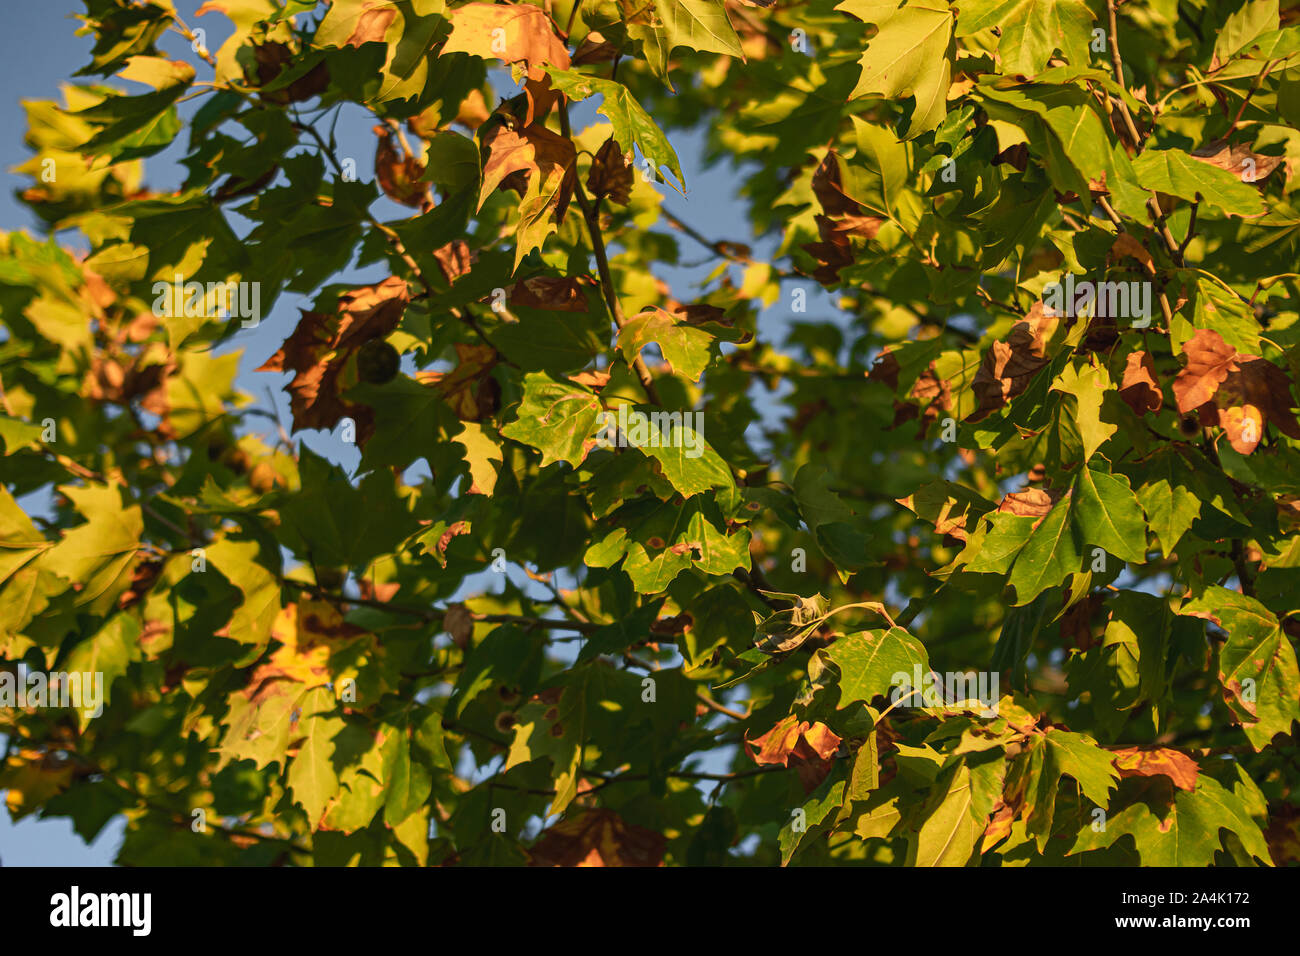 Follaje de un árbol a punto de transformar sus colores hacia tonos marrones y ocres con el cambio de temporada hacia el otoño Foto de stock